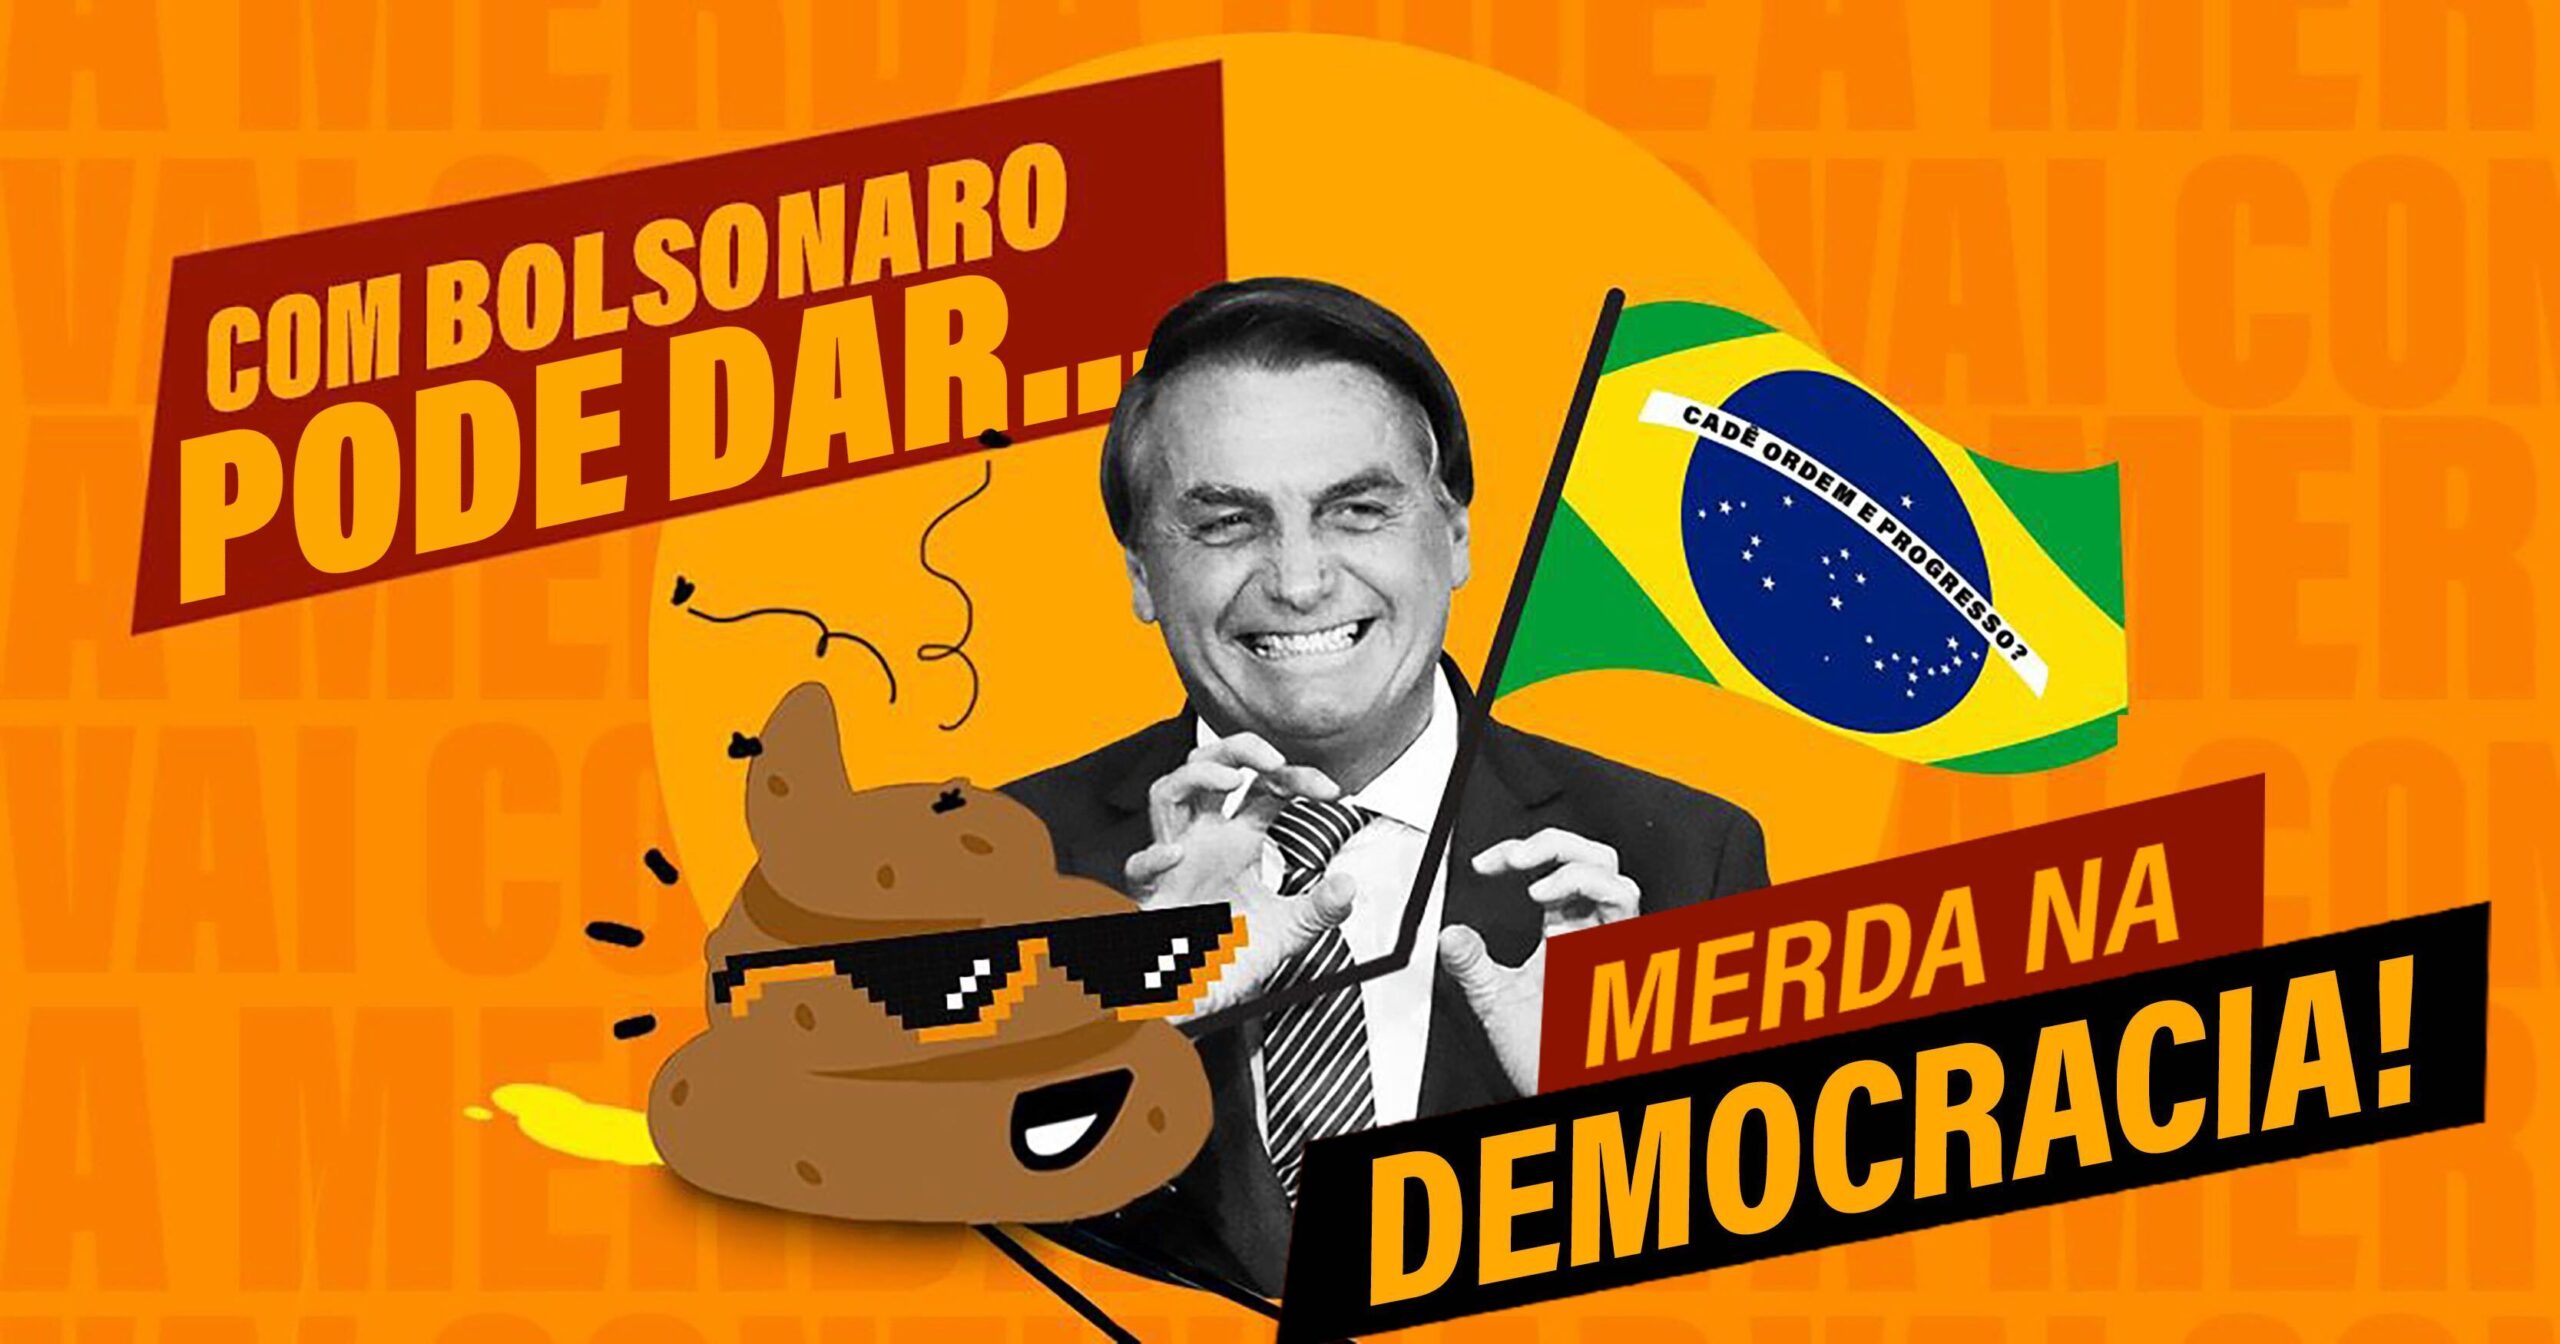 A merda que pode dar na democracia se o Bolsonaro for reeleito